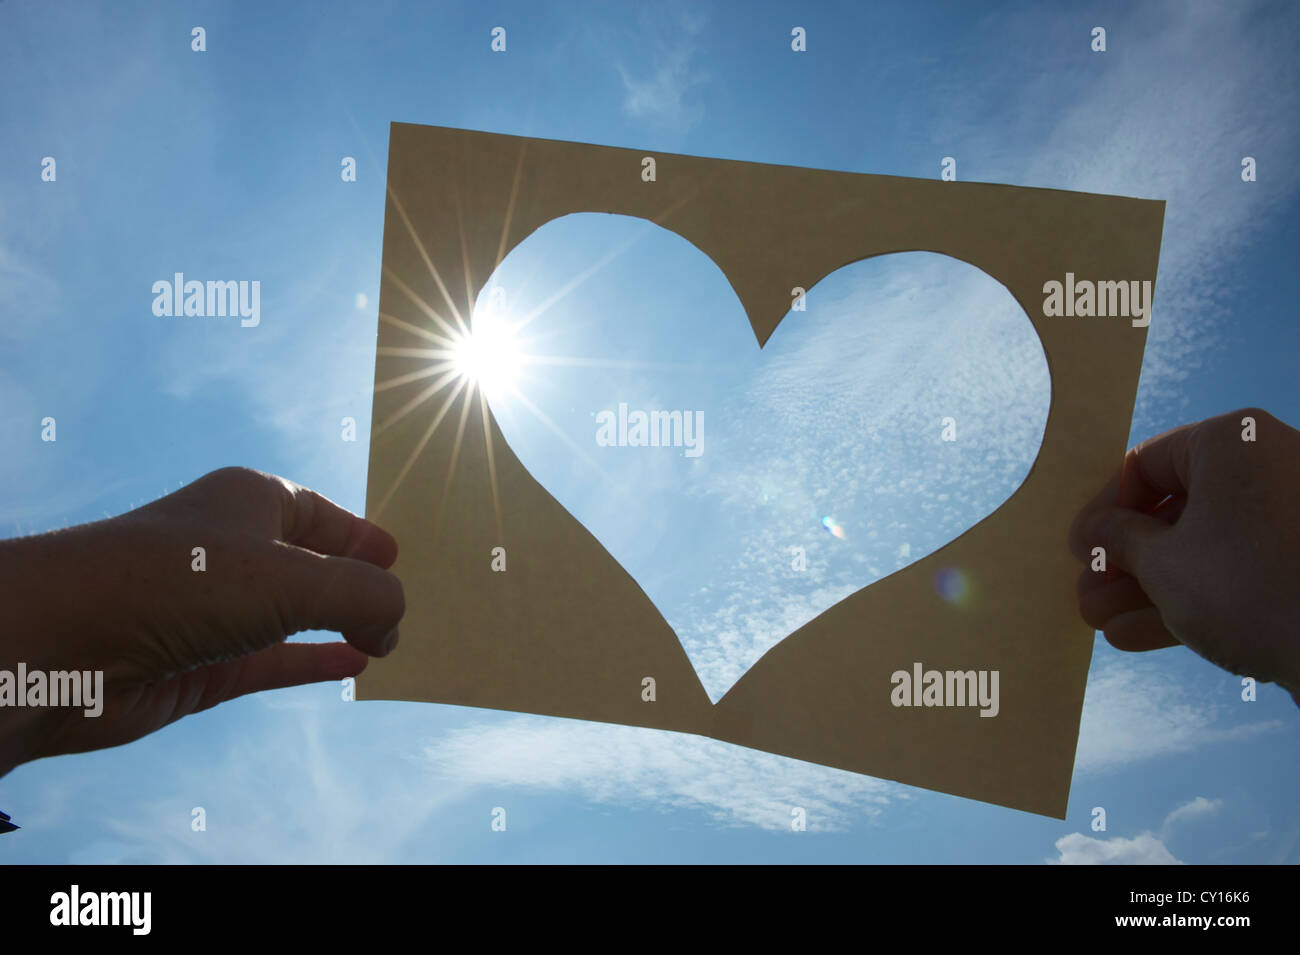 ein Herz aus Pappe in den Himmel gehalten gegen die Sonne, a heart cut of a piece of paper, two hands holding it against the sun Stock Photo